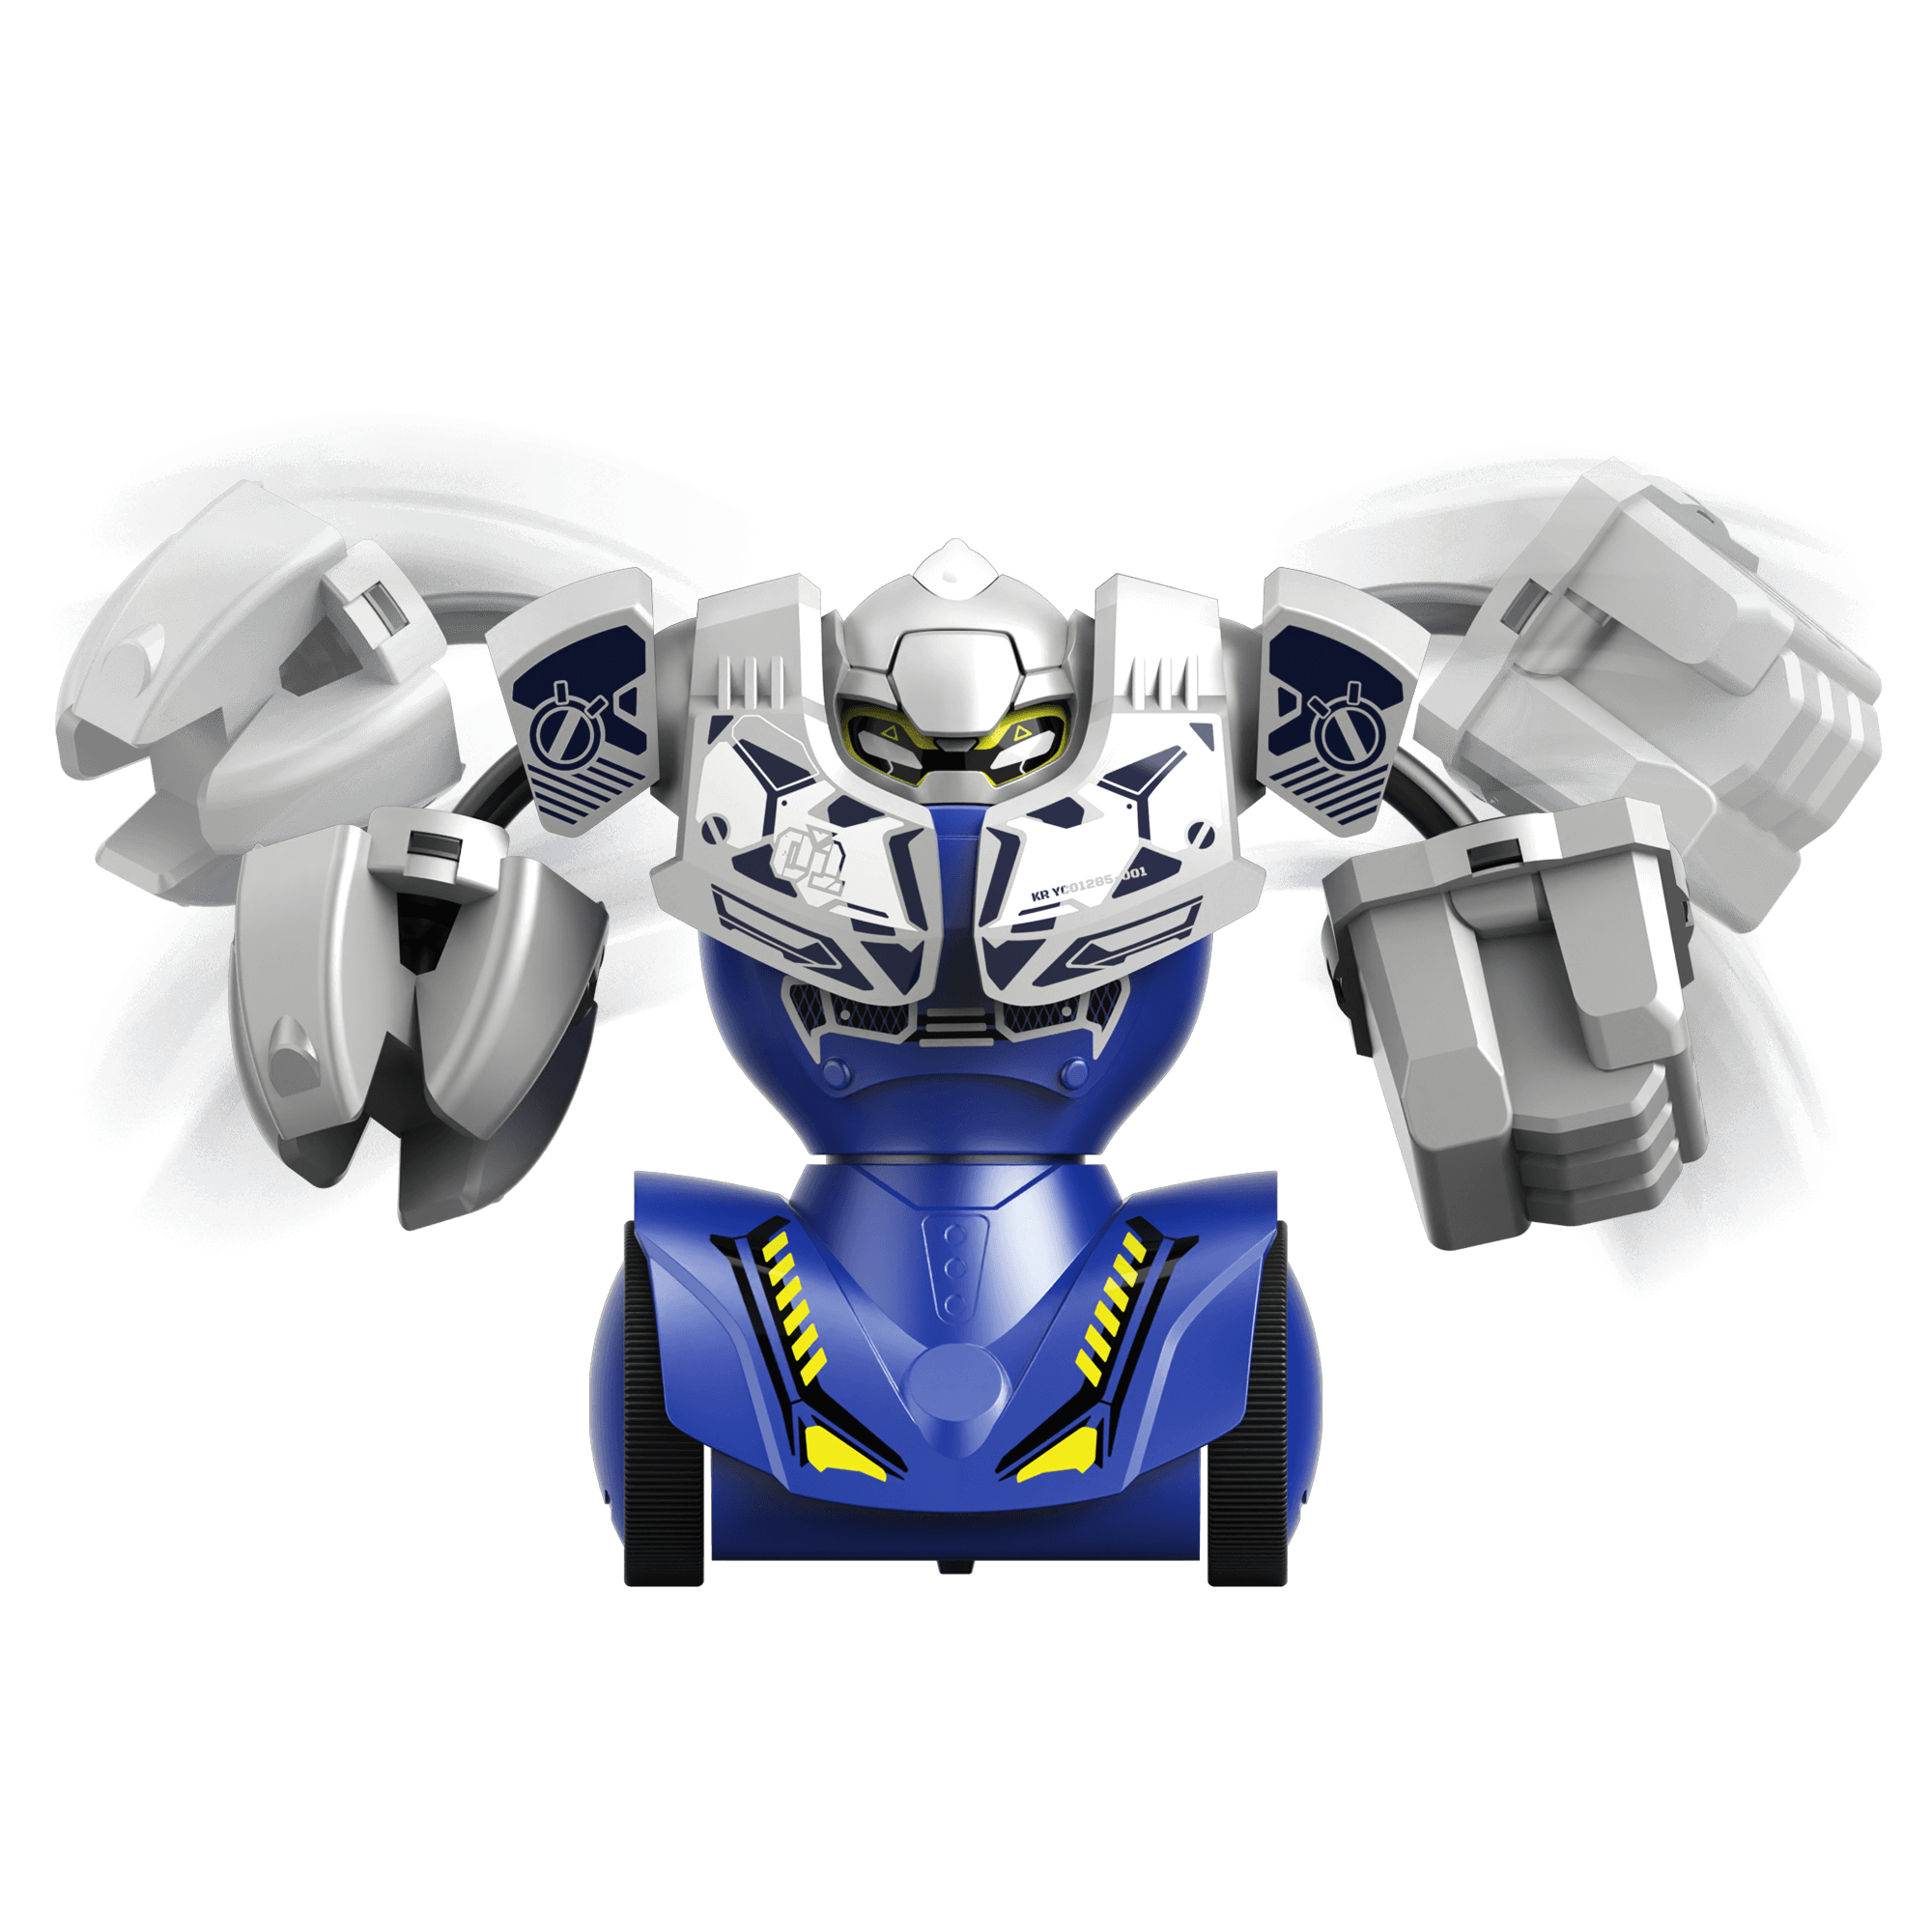 2 Robots de Combat - YCOO - Robot Kombat Bi Pack Ycoo : King Jouet, Robots  Ycoo - Jeux électroniques